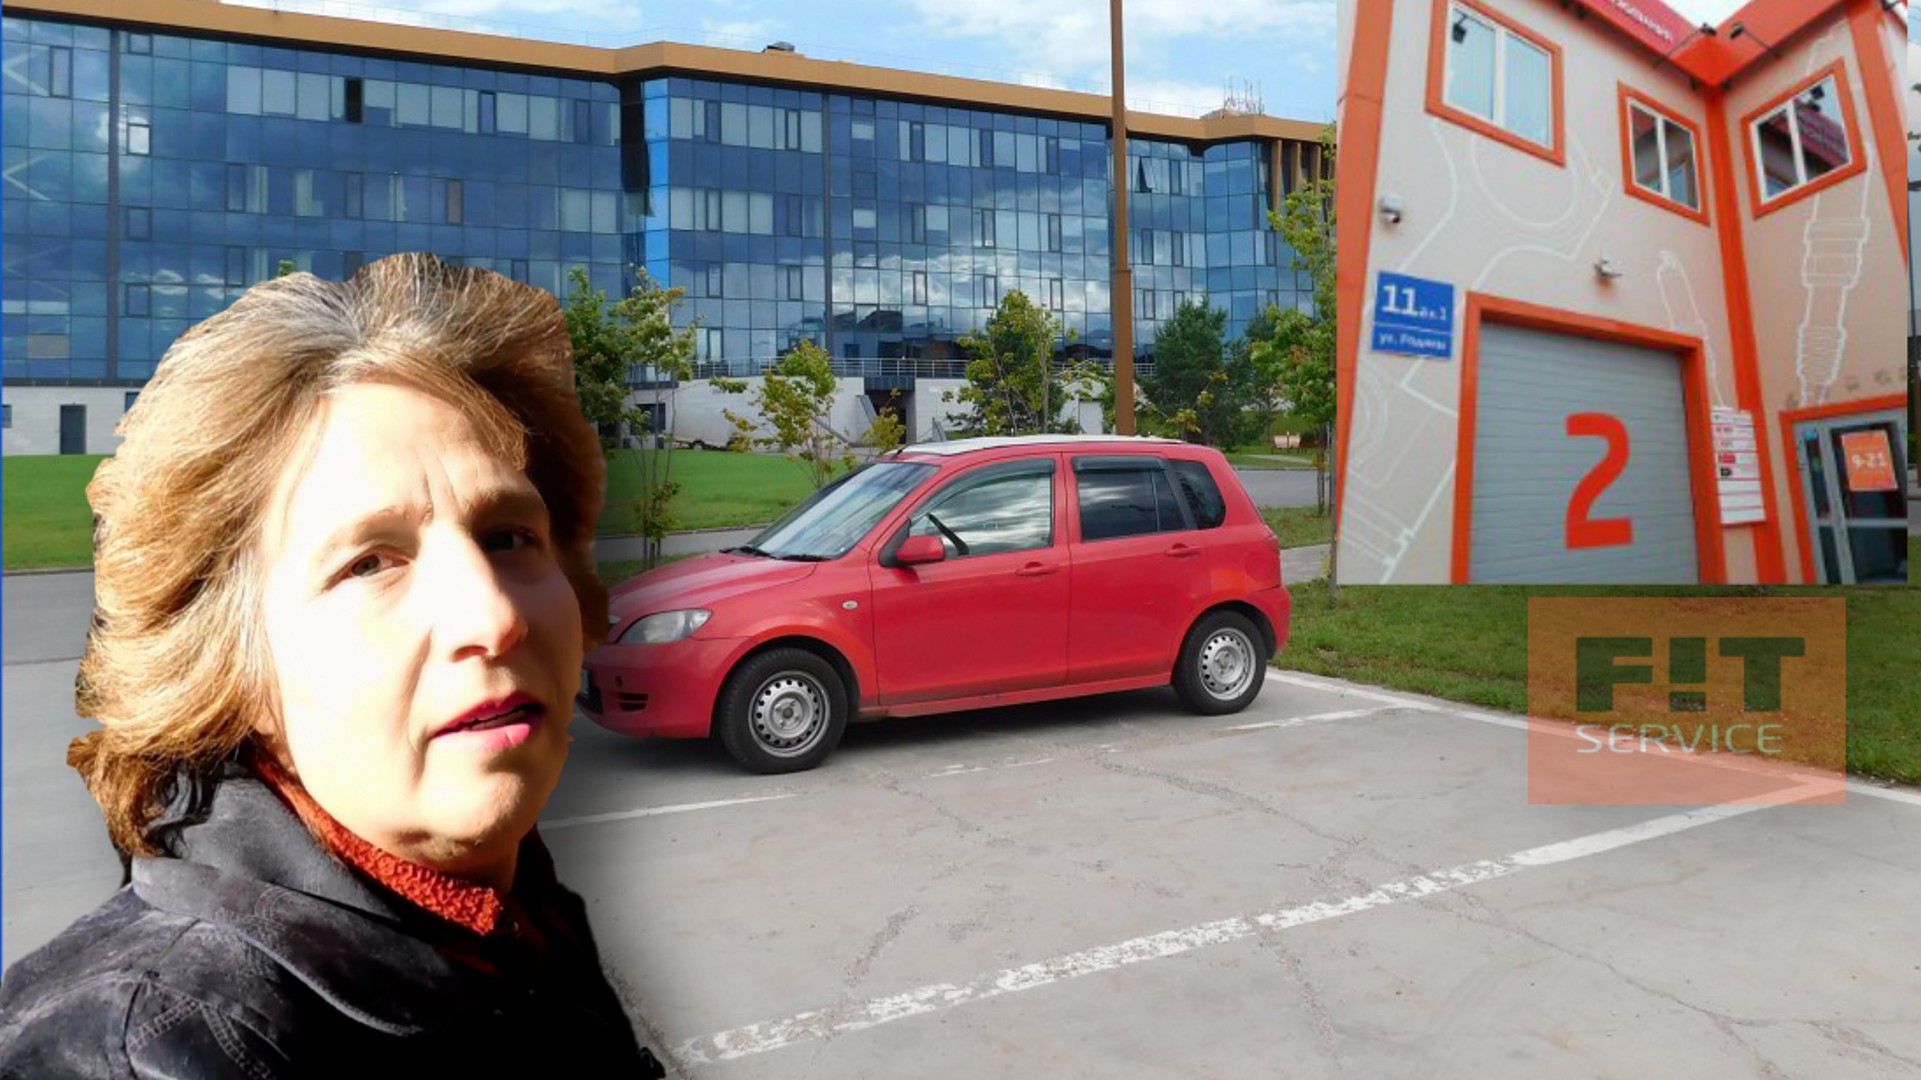 Отзыв и мой личный опыт ремонта и обслуживания автомобиля в Fit-сервис в Казани